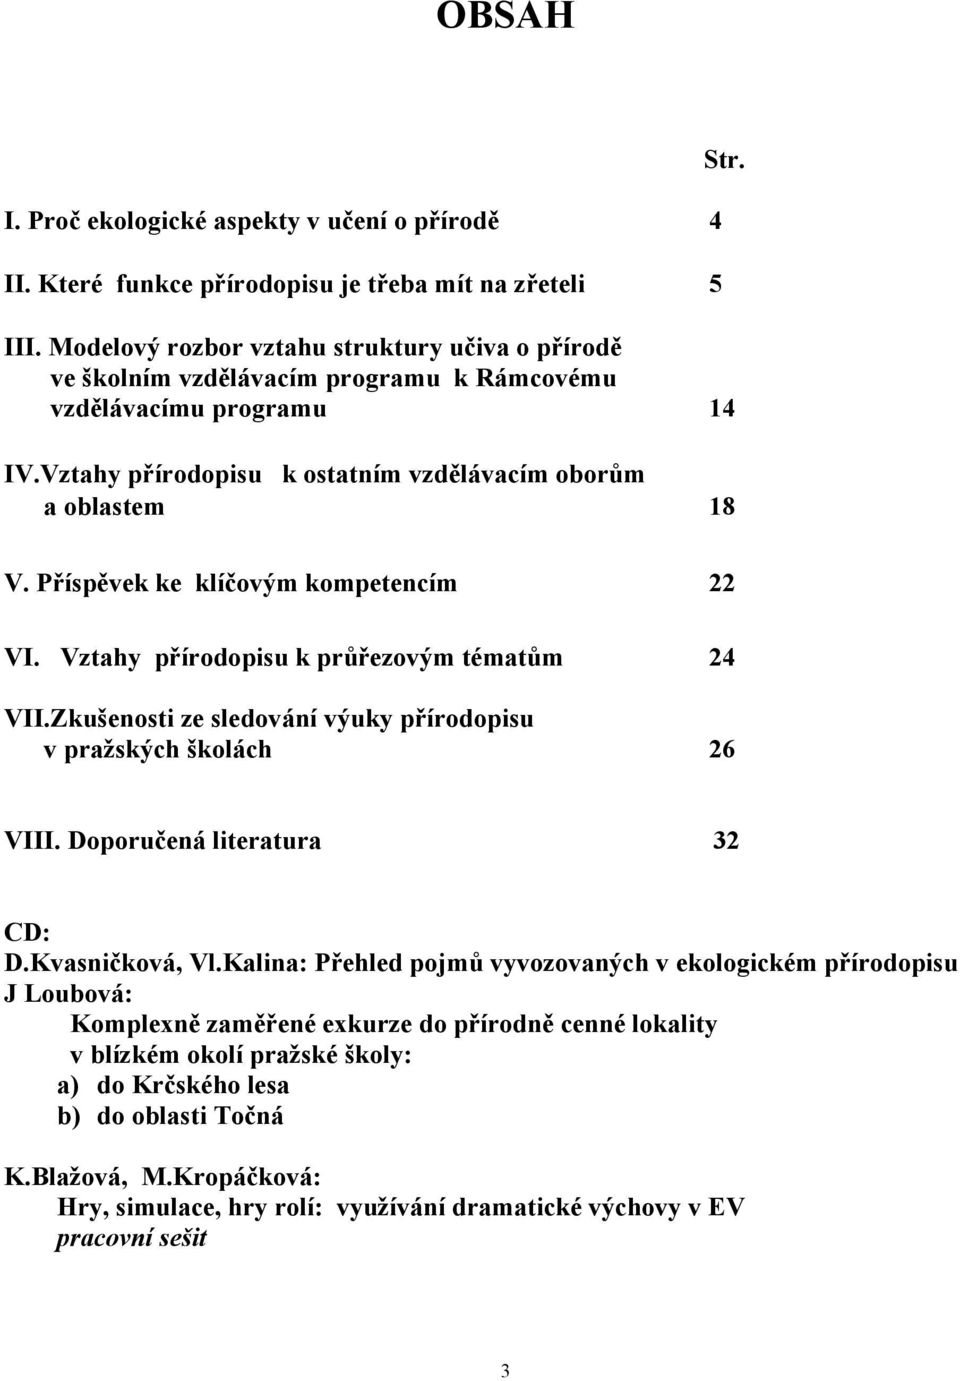 Příspěvek ke klíčovým kompetencím 22 VI. Vztahy přírodopisu k průřezovým tématům 24 VII.Zkušenosti ze sledování výuky přírodopisu v pražských školách 26 VIII. Doporučená literatura 32 CD: D.